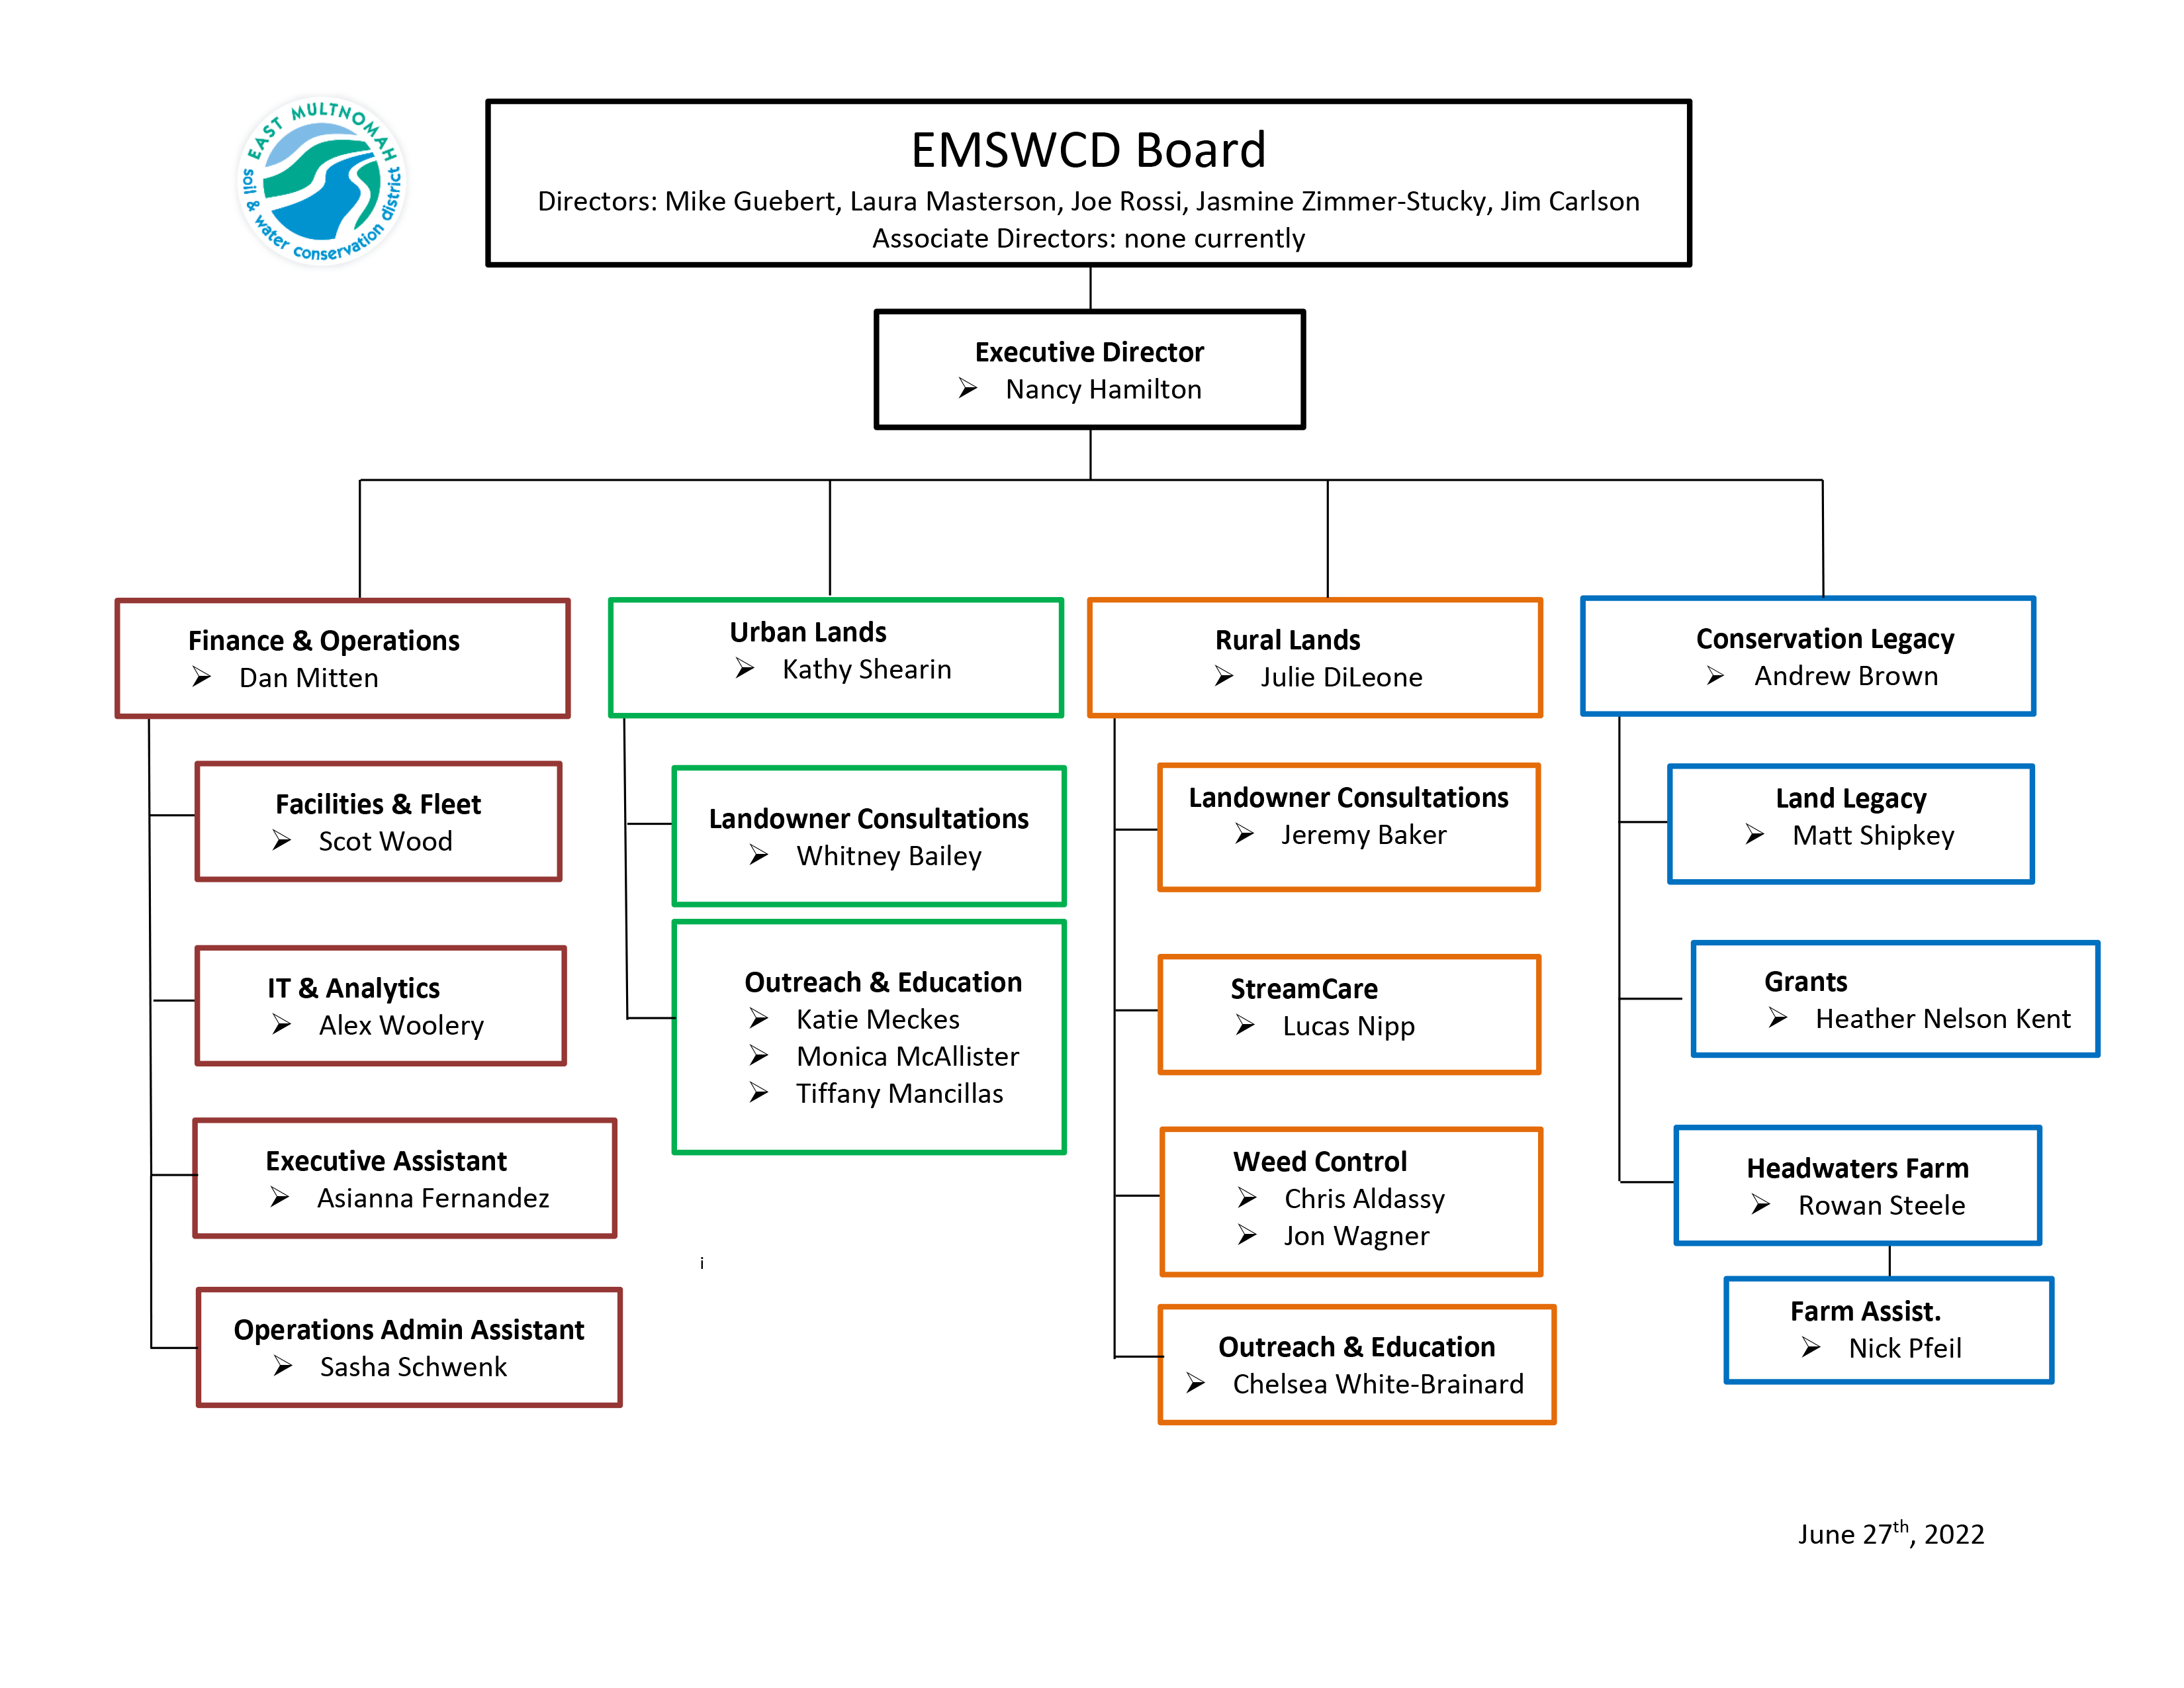 EMSWCD Sơ đồ tổ chức thể hiện hệ thống cấp bậc của Hội đồng quản trị, Giám đốc điều hành, Kiểm soát viên và nhân viên – cập nhật ngày 27 tháng 2022 năm XNUMX